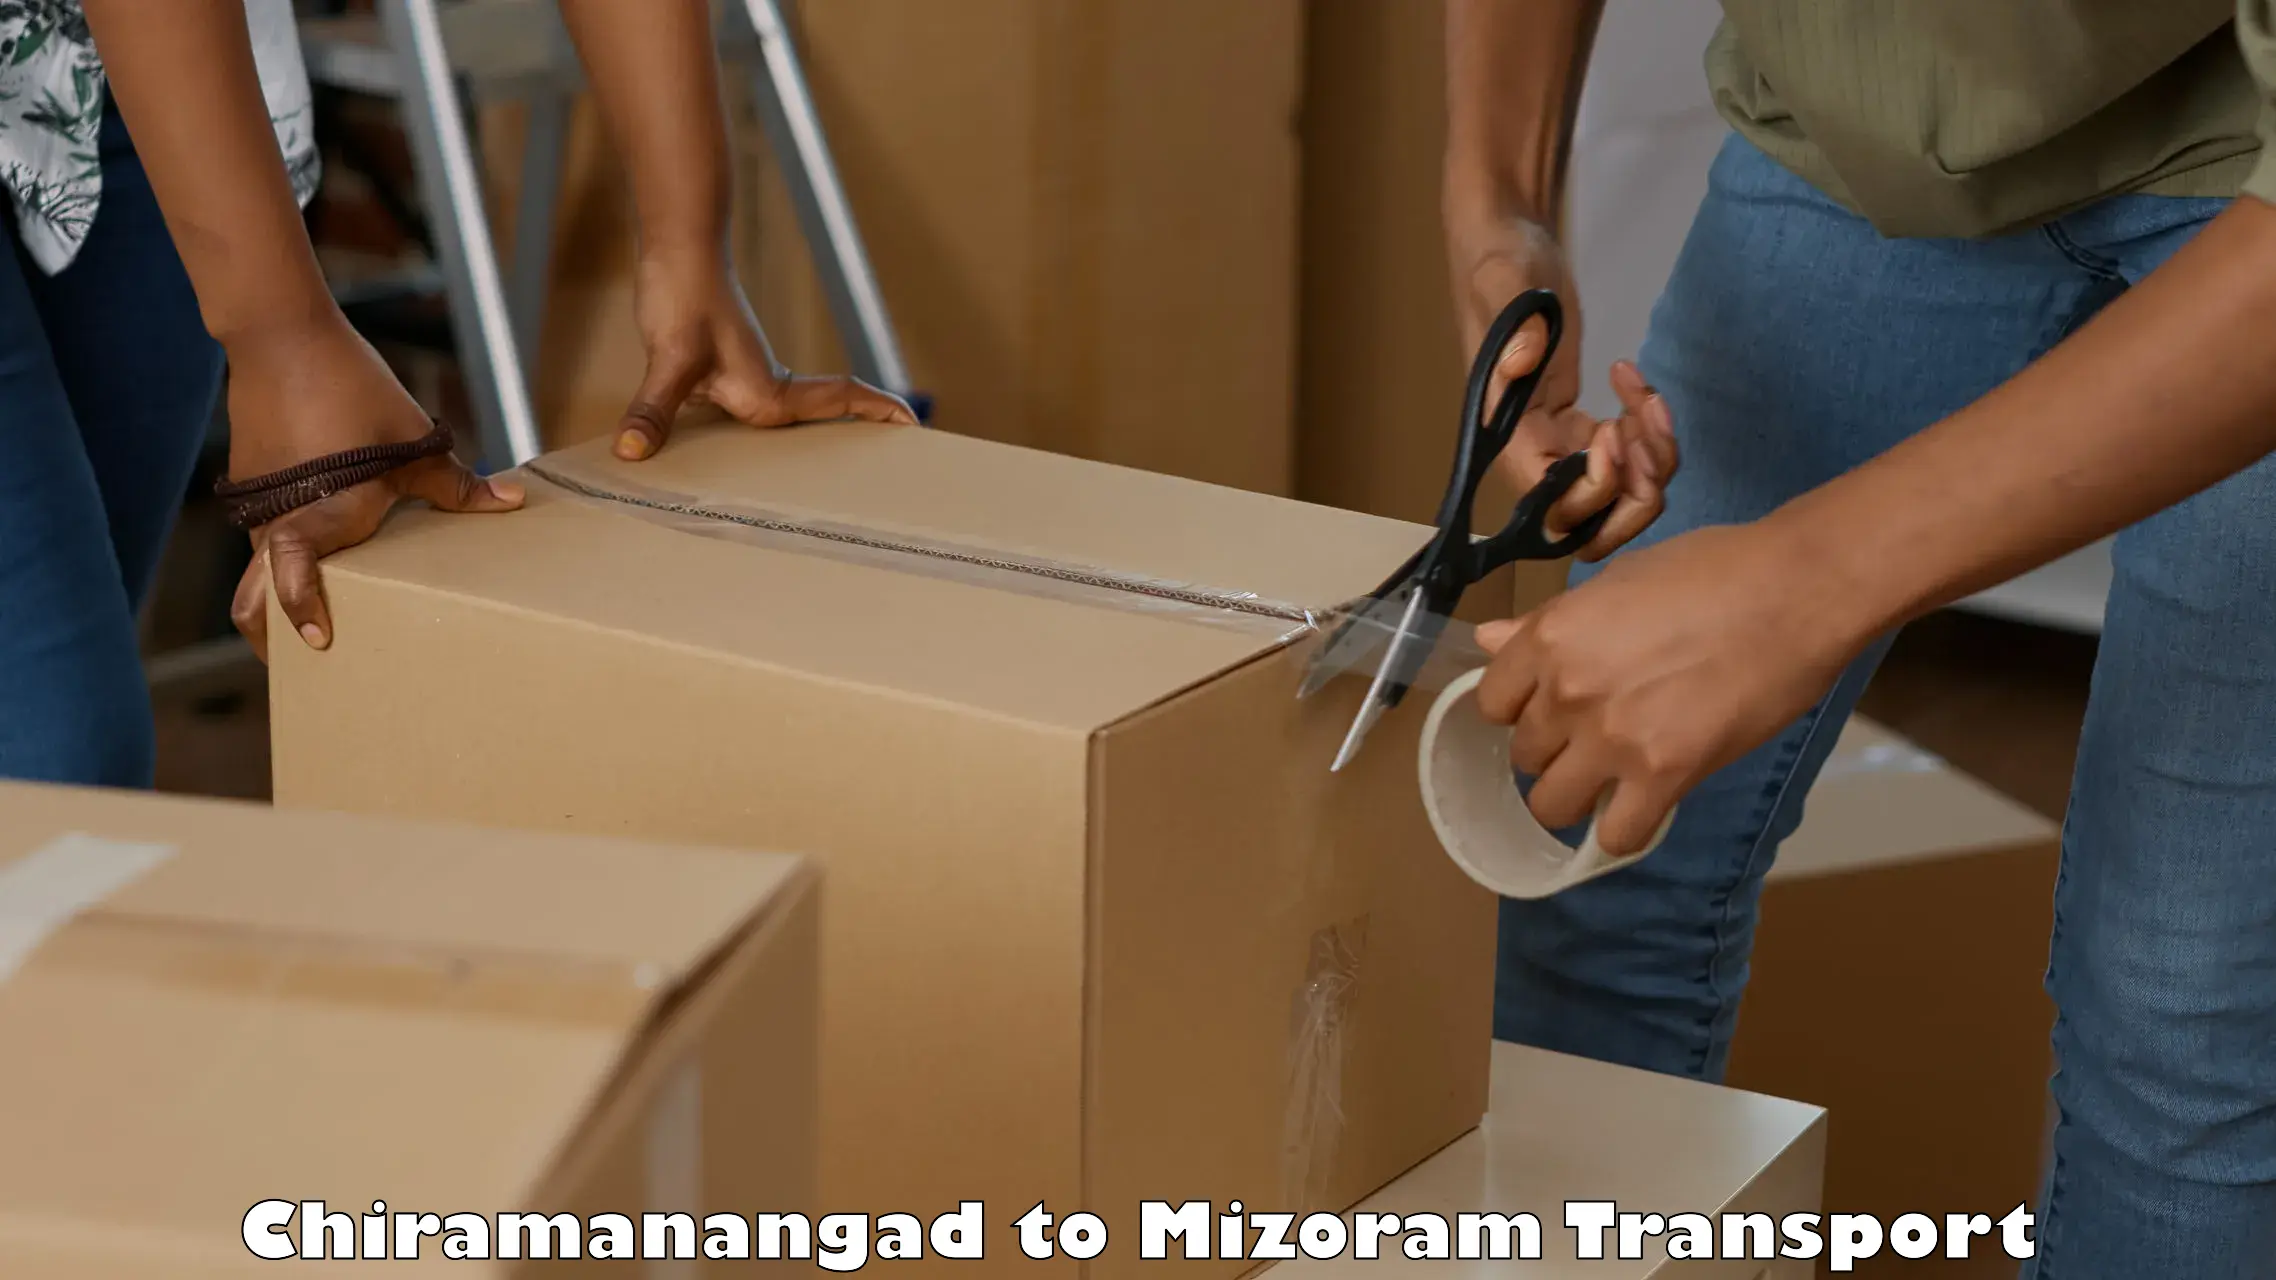 Truck transport companies in India Chiramanangad to Aizawl